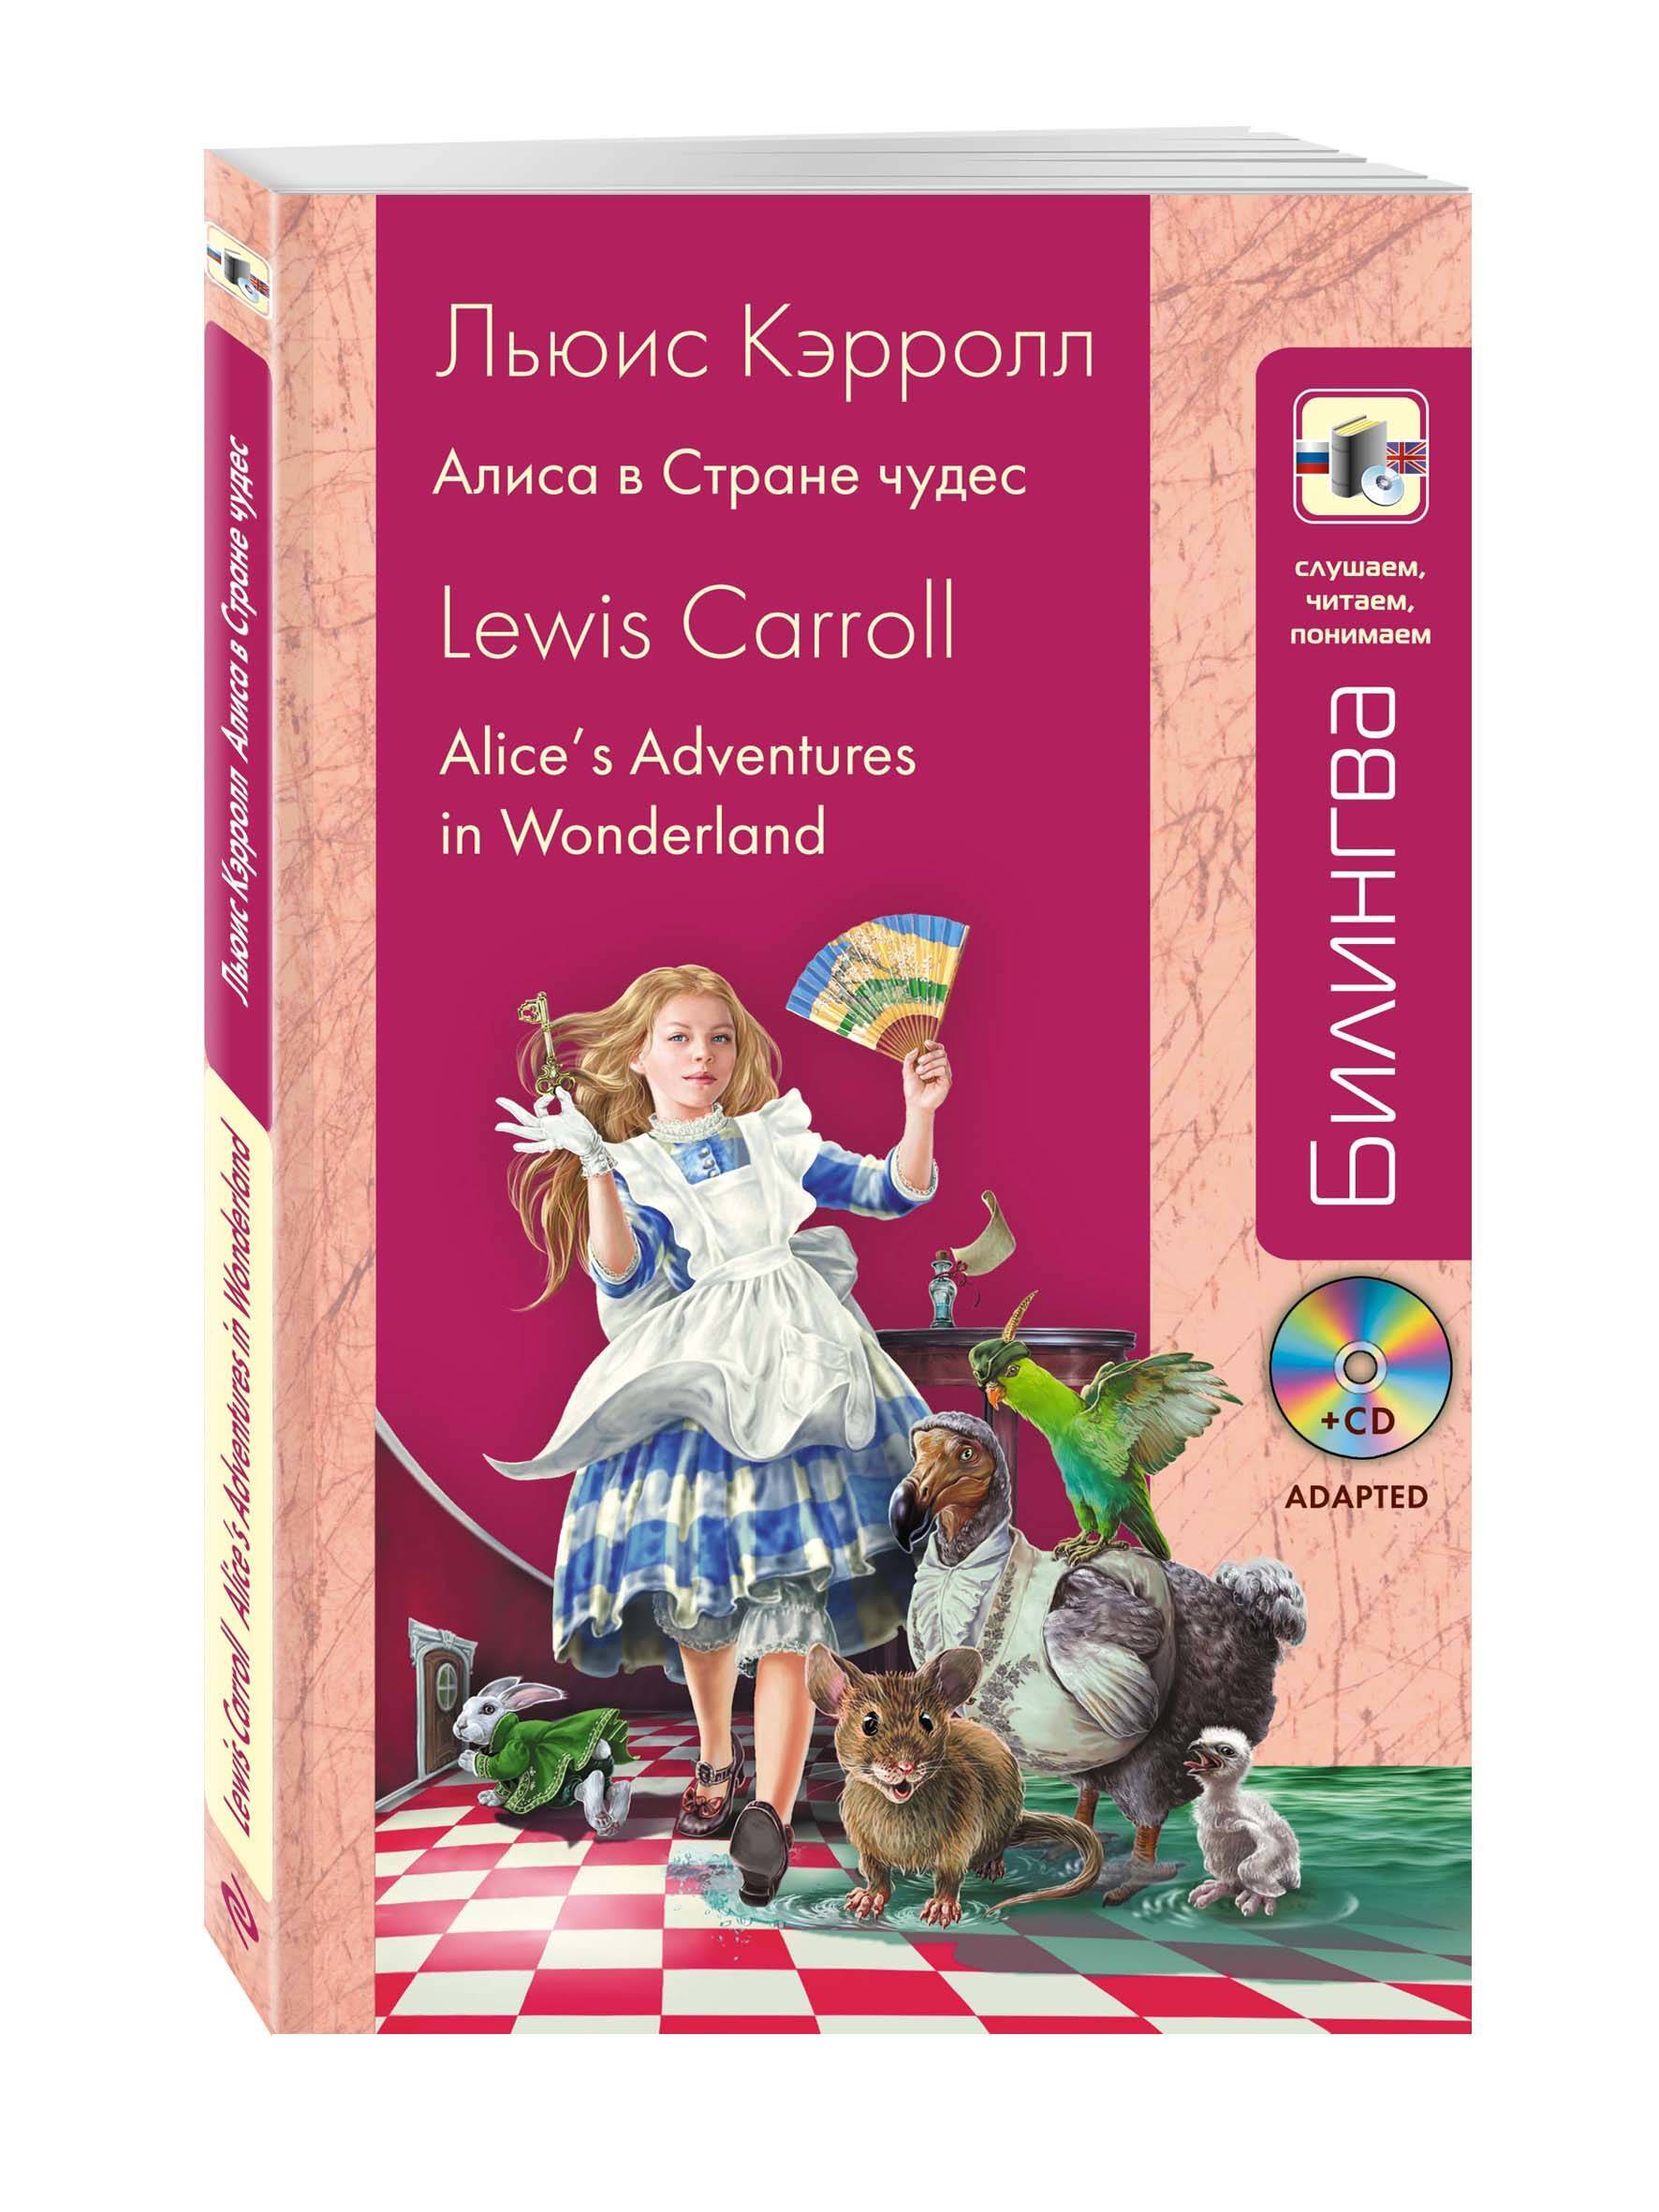 Алиса в стране чудес учебник. Алиса в стране чудес из книги Льюиса Кэрролла. Алиса в стране чудес Карол на английском. Алиса. «Алиса в стране чудес» и «Алиса в Зазеркалье» Льюис Кэрролл. Lewis Carroll Алиса в стране чудес.